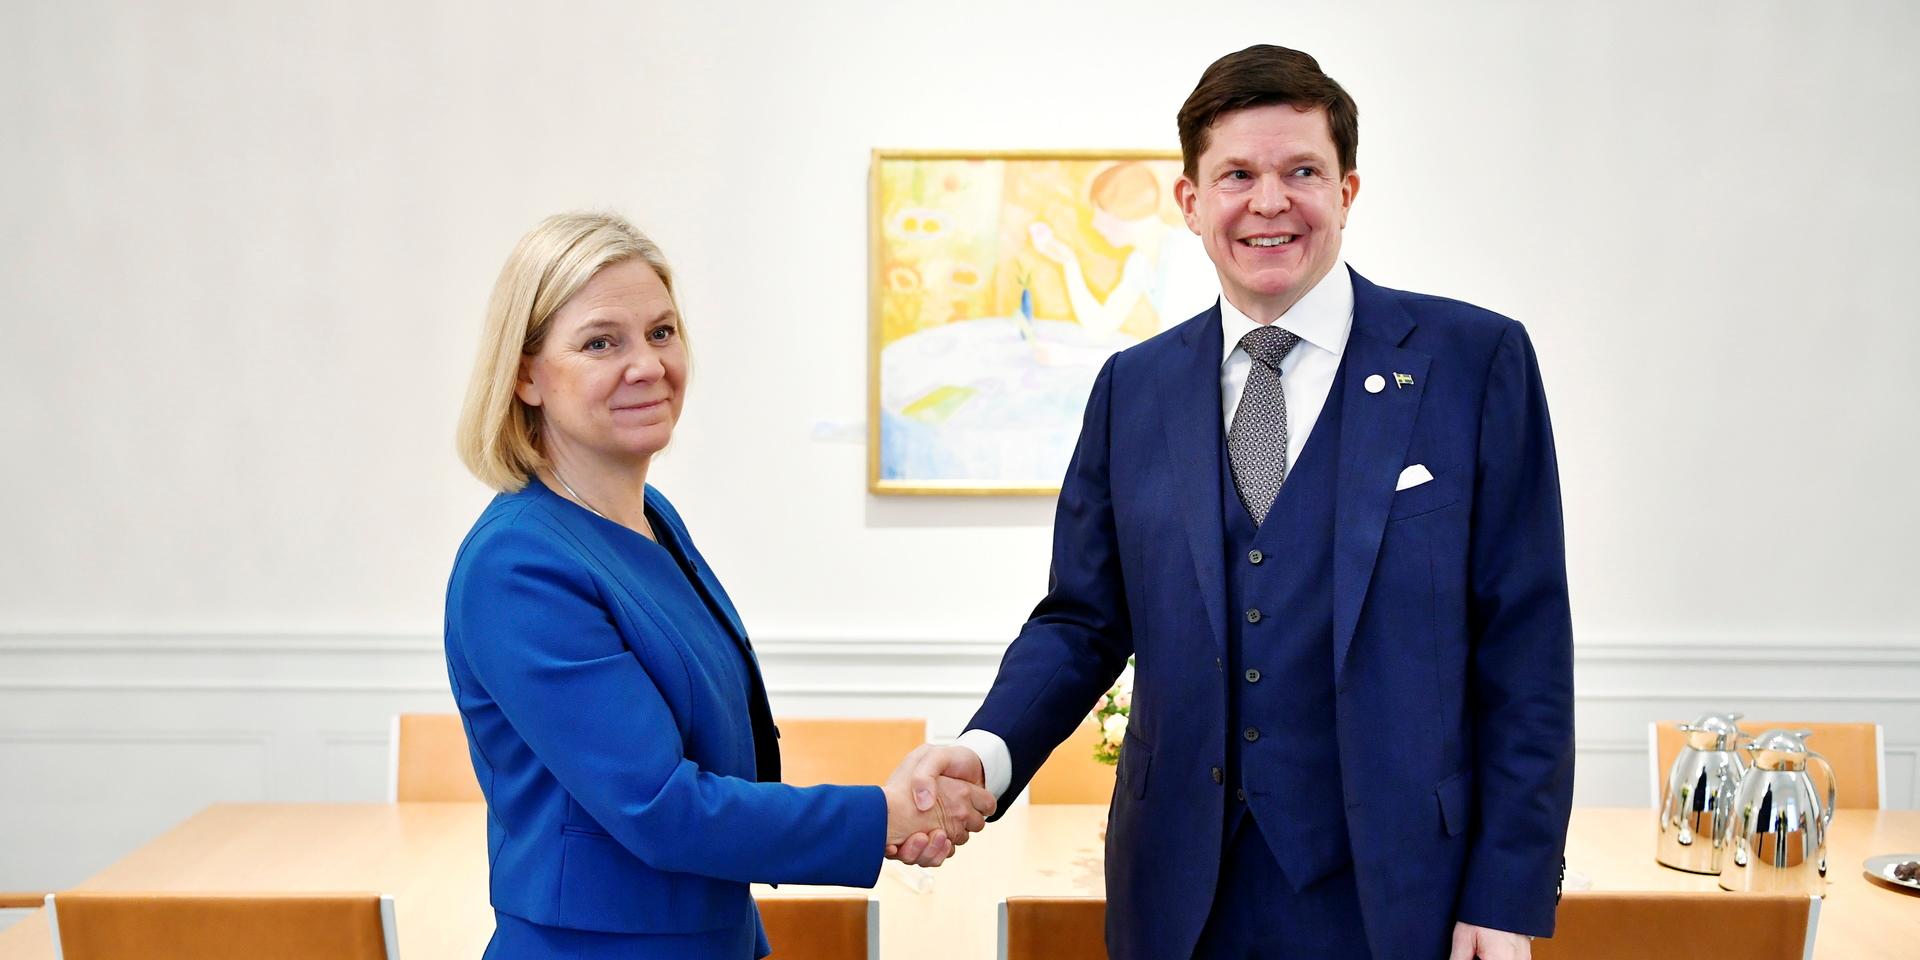 Socialdemokraternas partiledare Magdalena Andersson hälsas välkommen till talmansrundan av riksdagens talman Andreas Norlén.